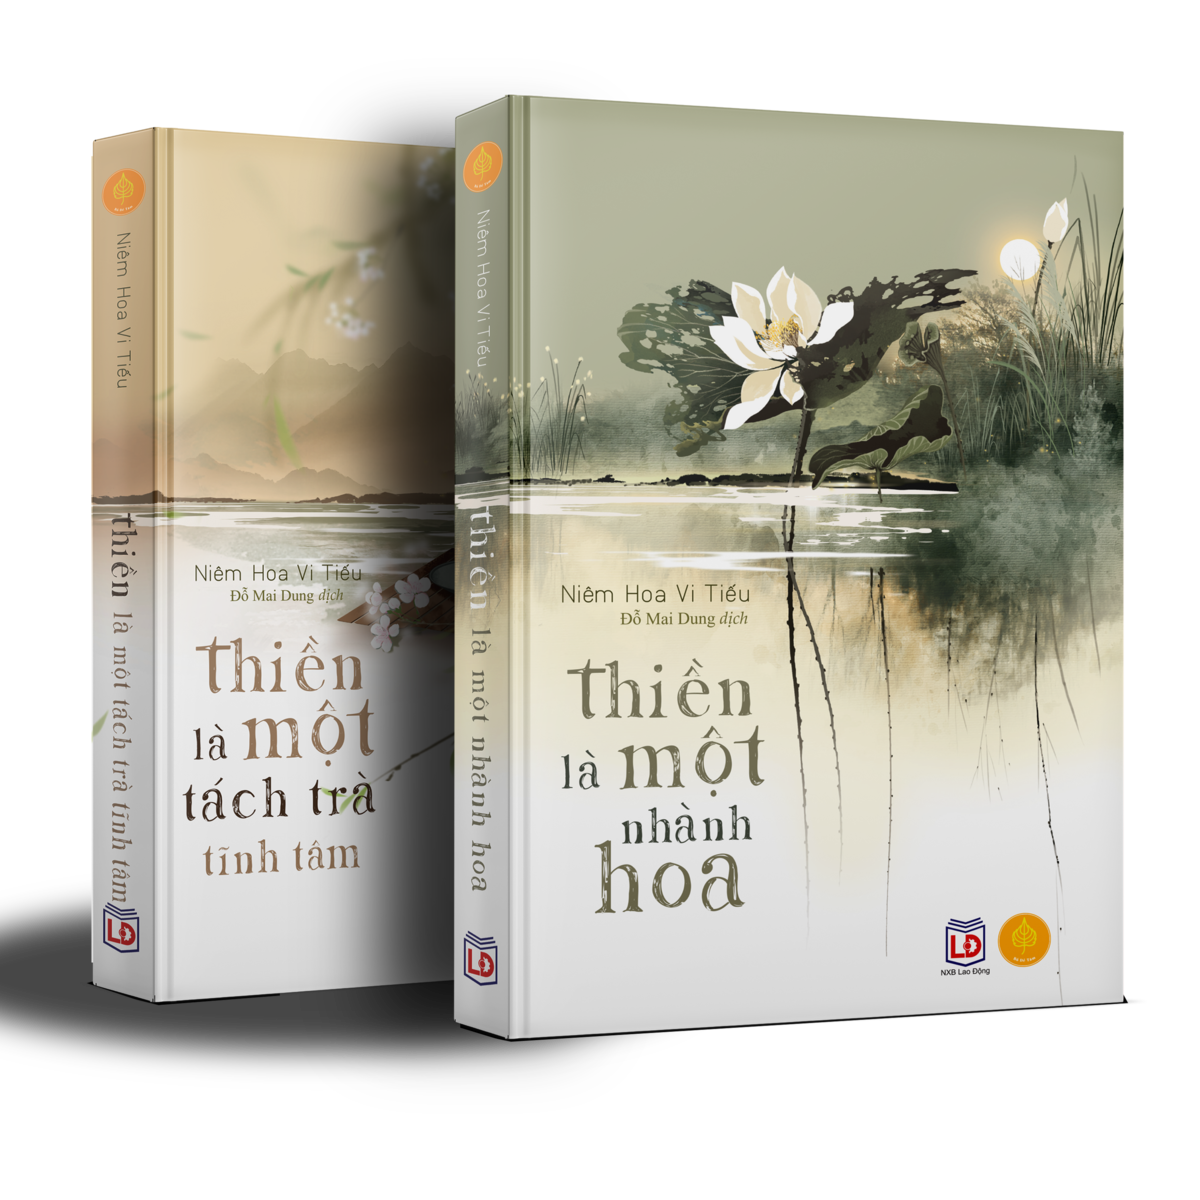 Sách Thiền Là Một Nhành Hoa, Sách Về Những Hiểu Biết Sâu Sắc Về Cuộc Sống